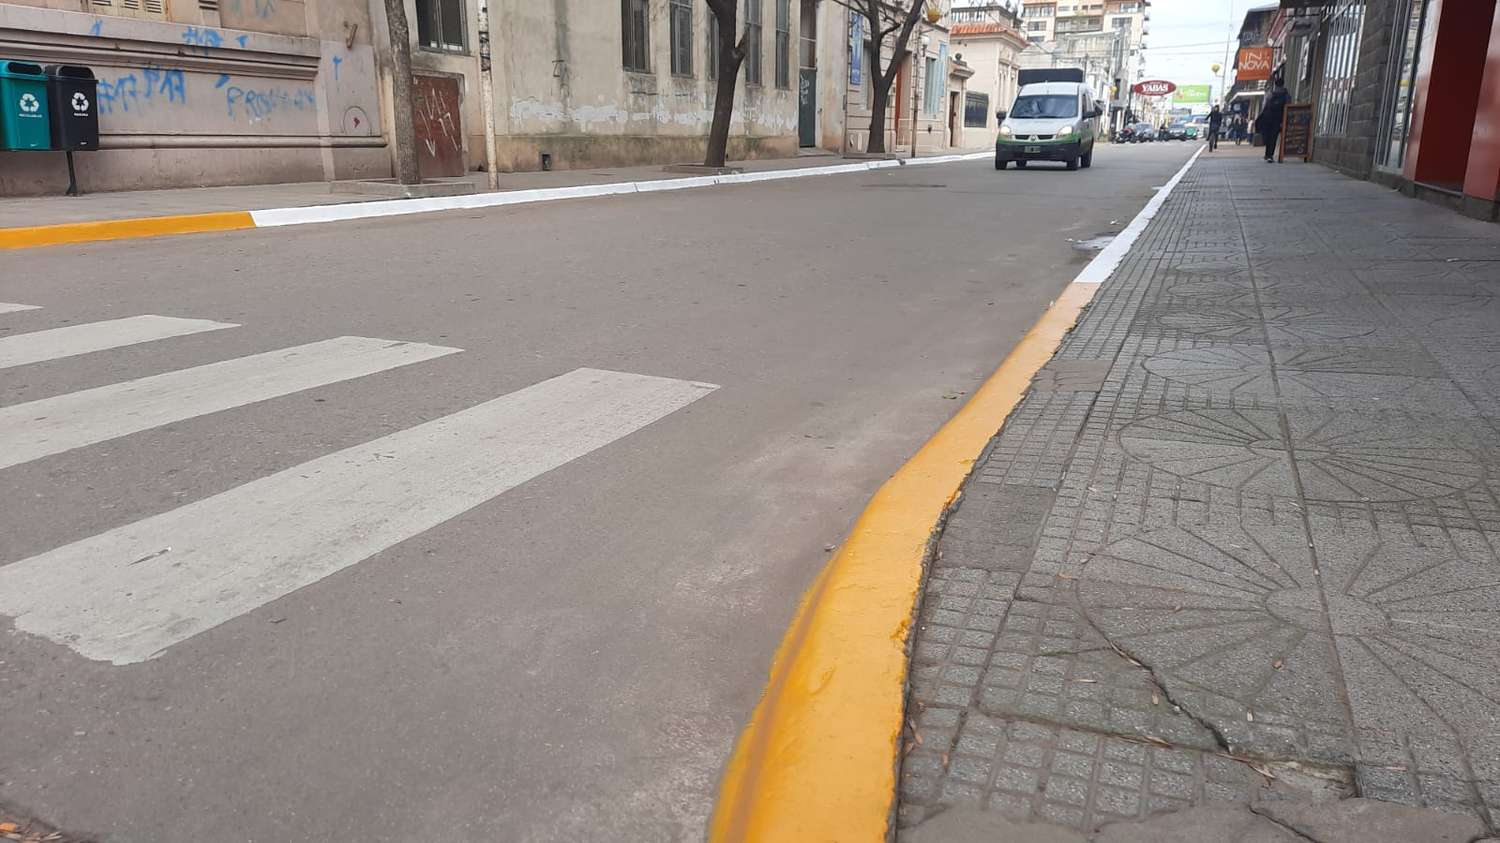 ¿Por qué pintaron los cordones de los dos lados de la calle?